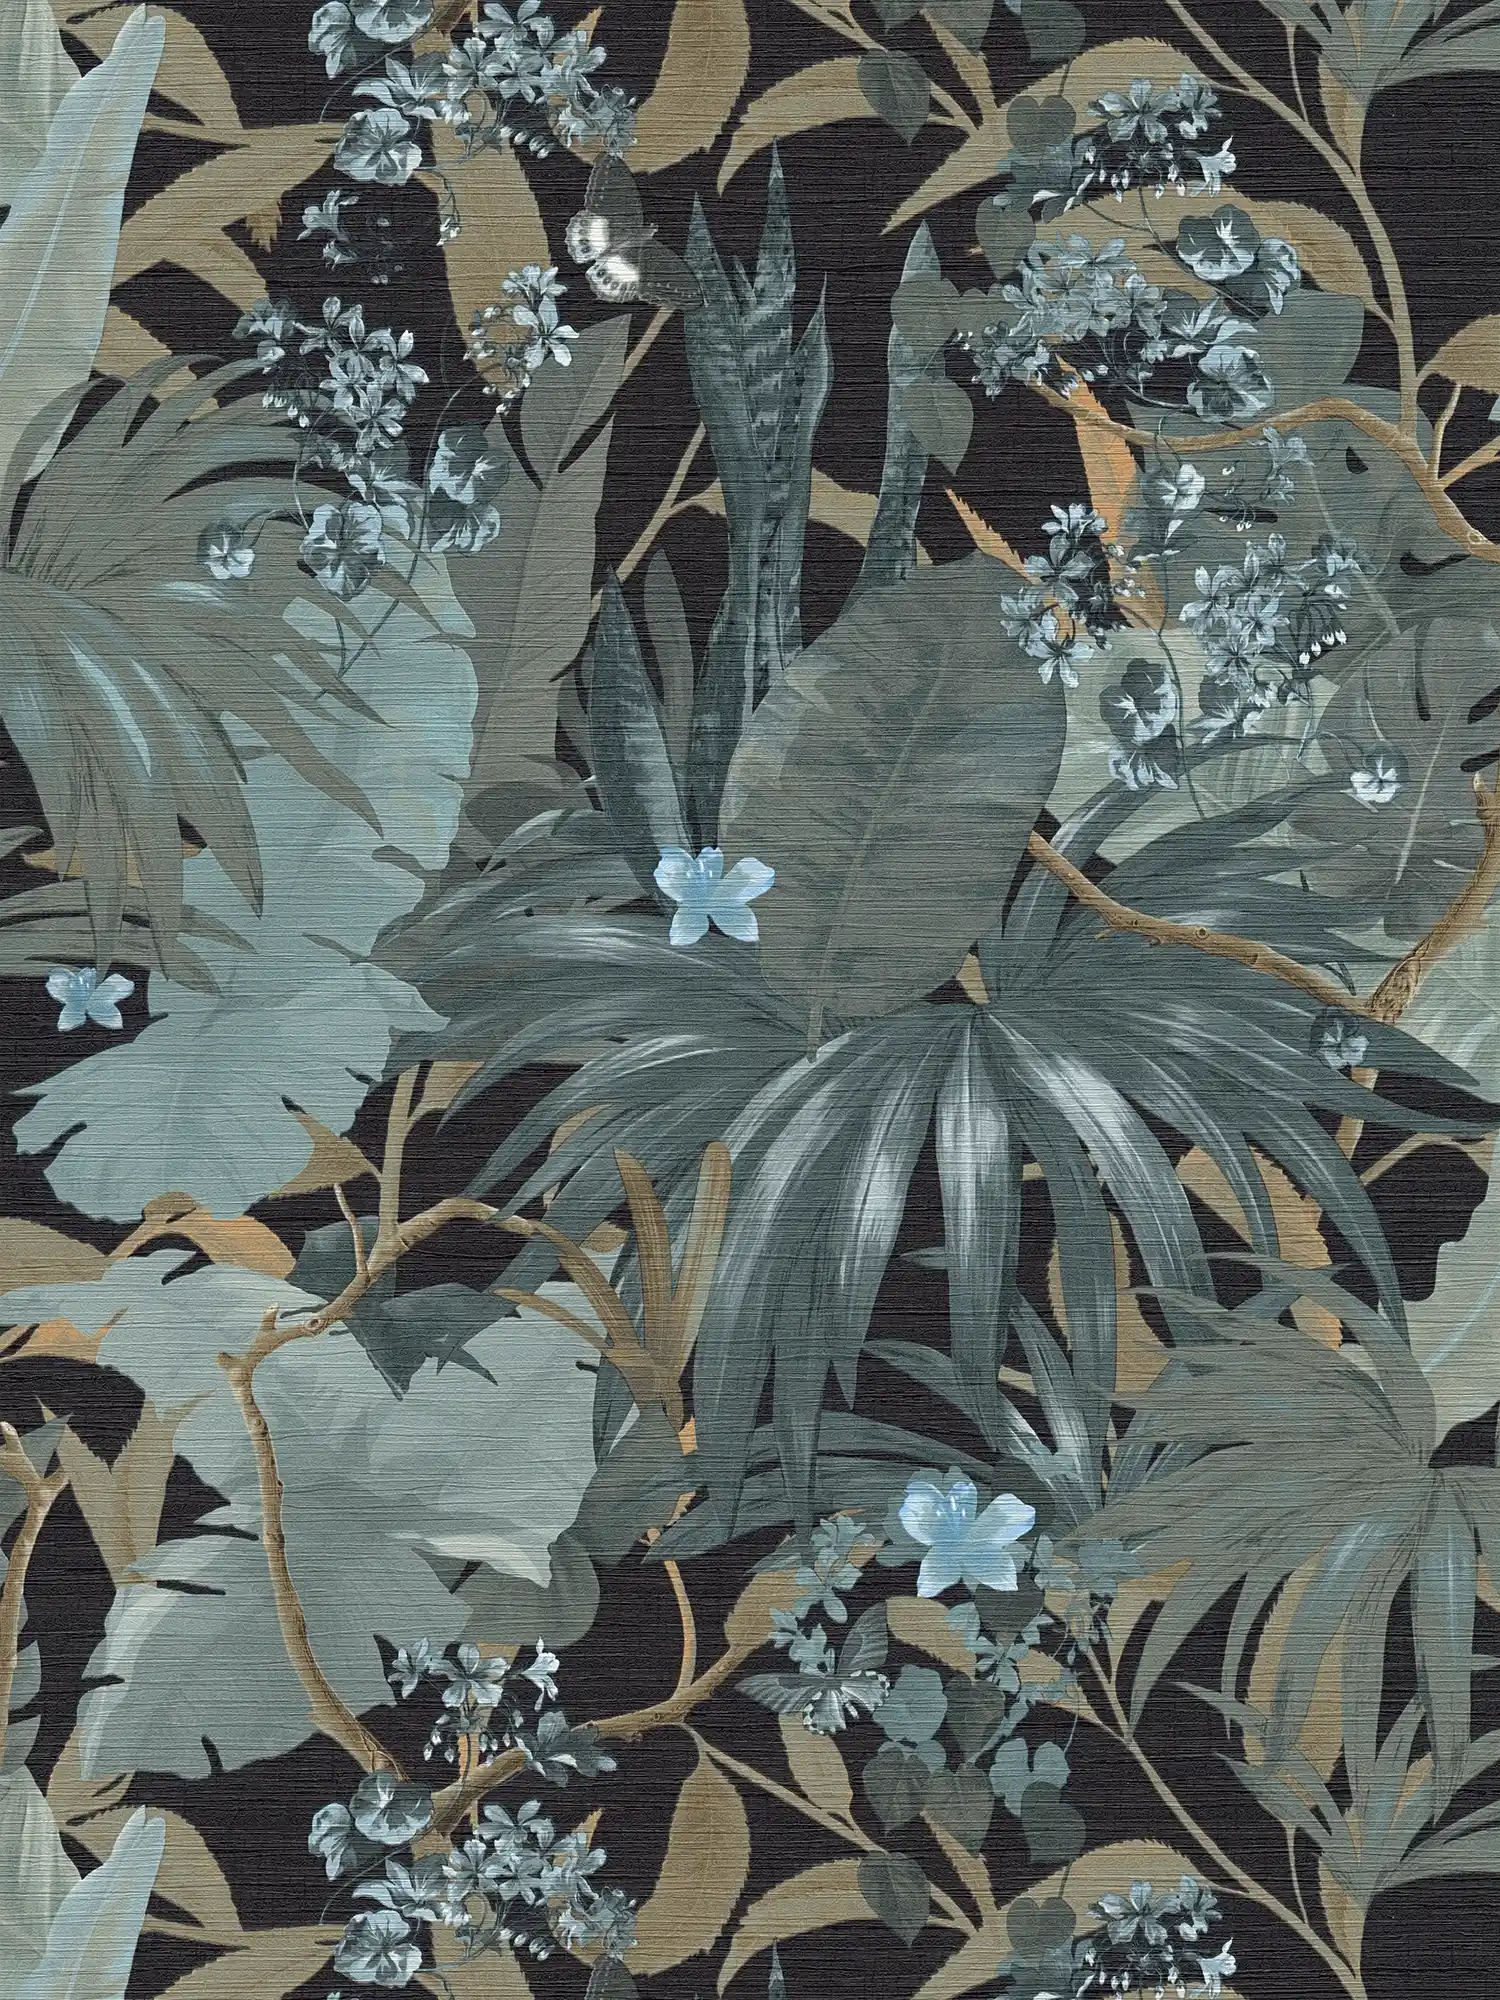 behang jungle design met bladmotief - grijs, groen
